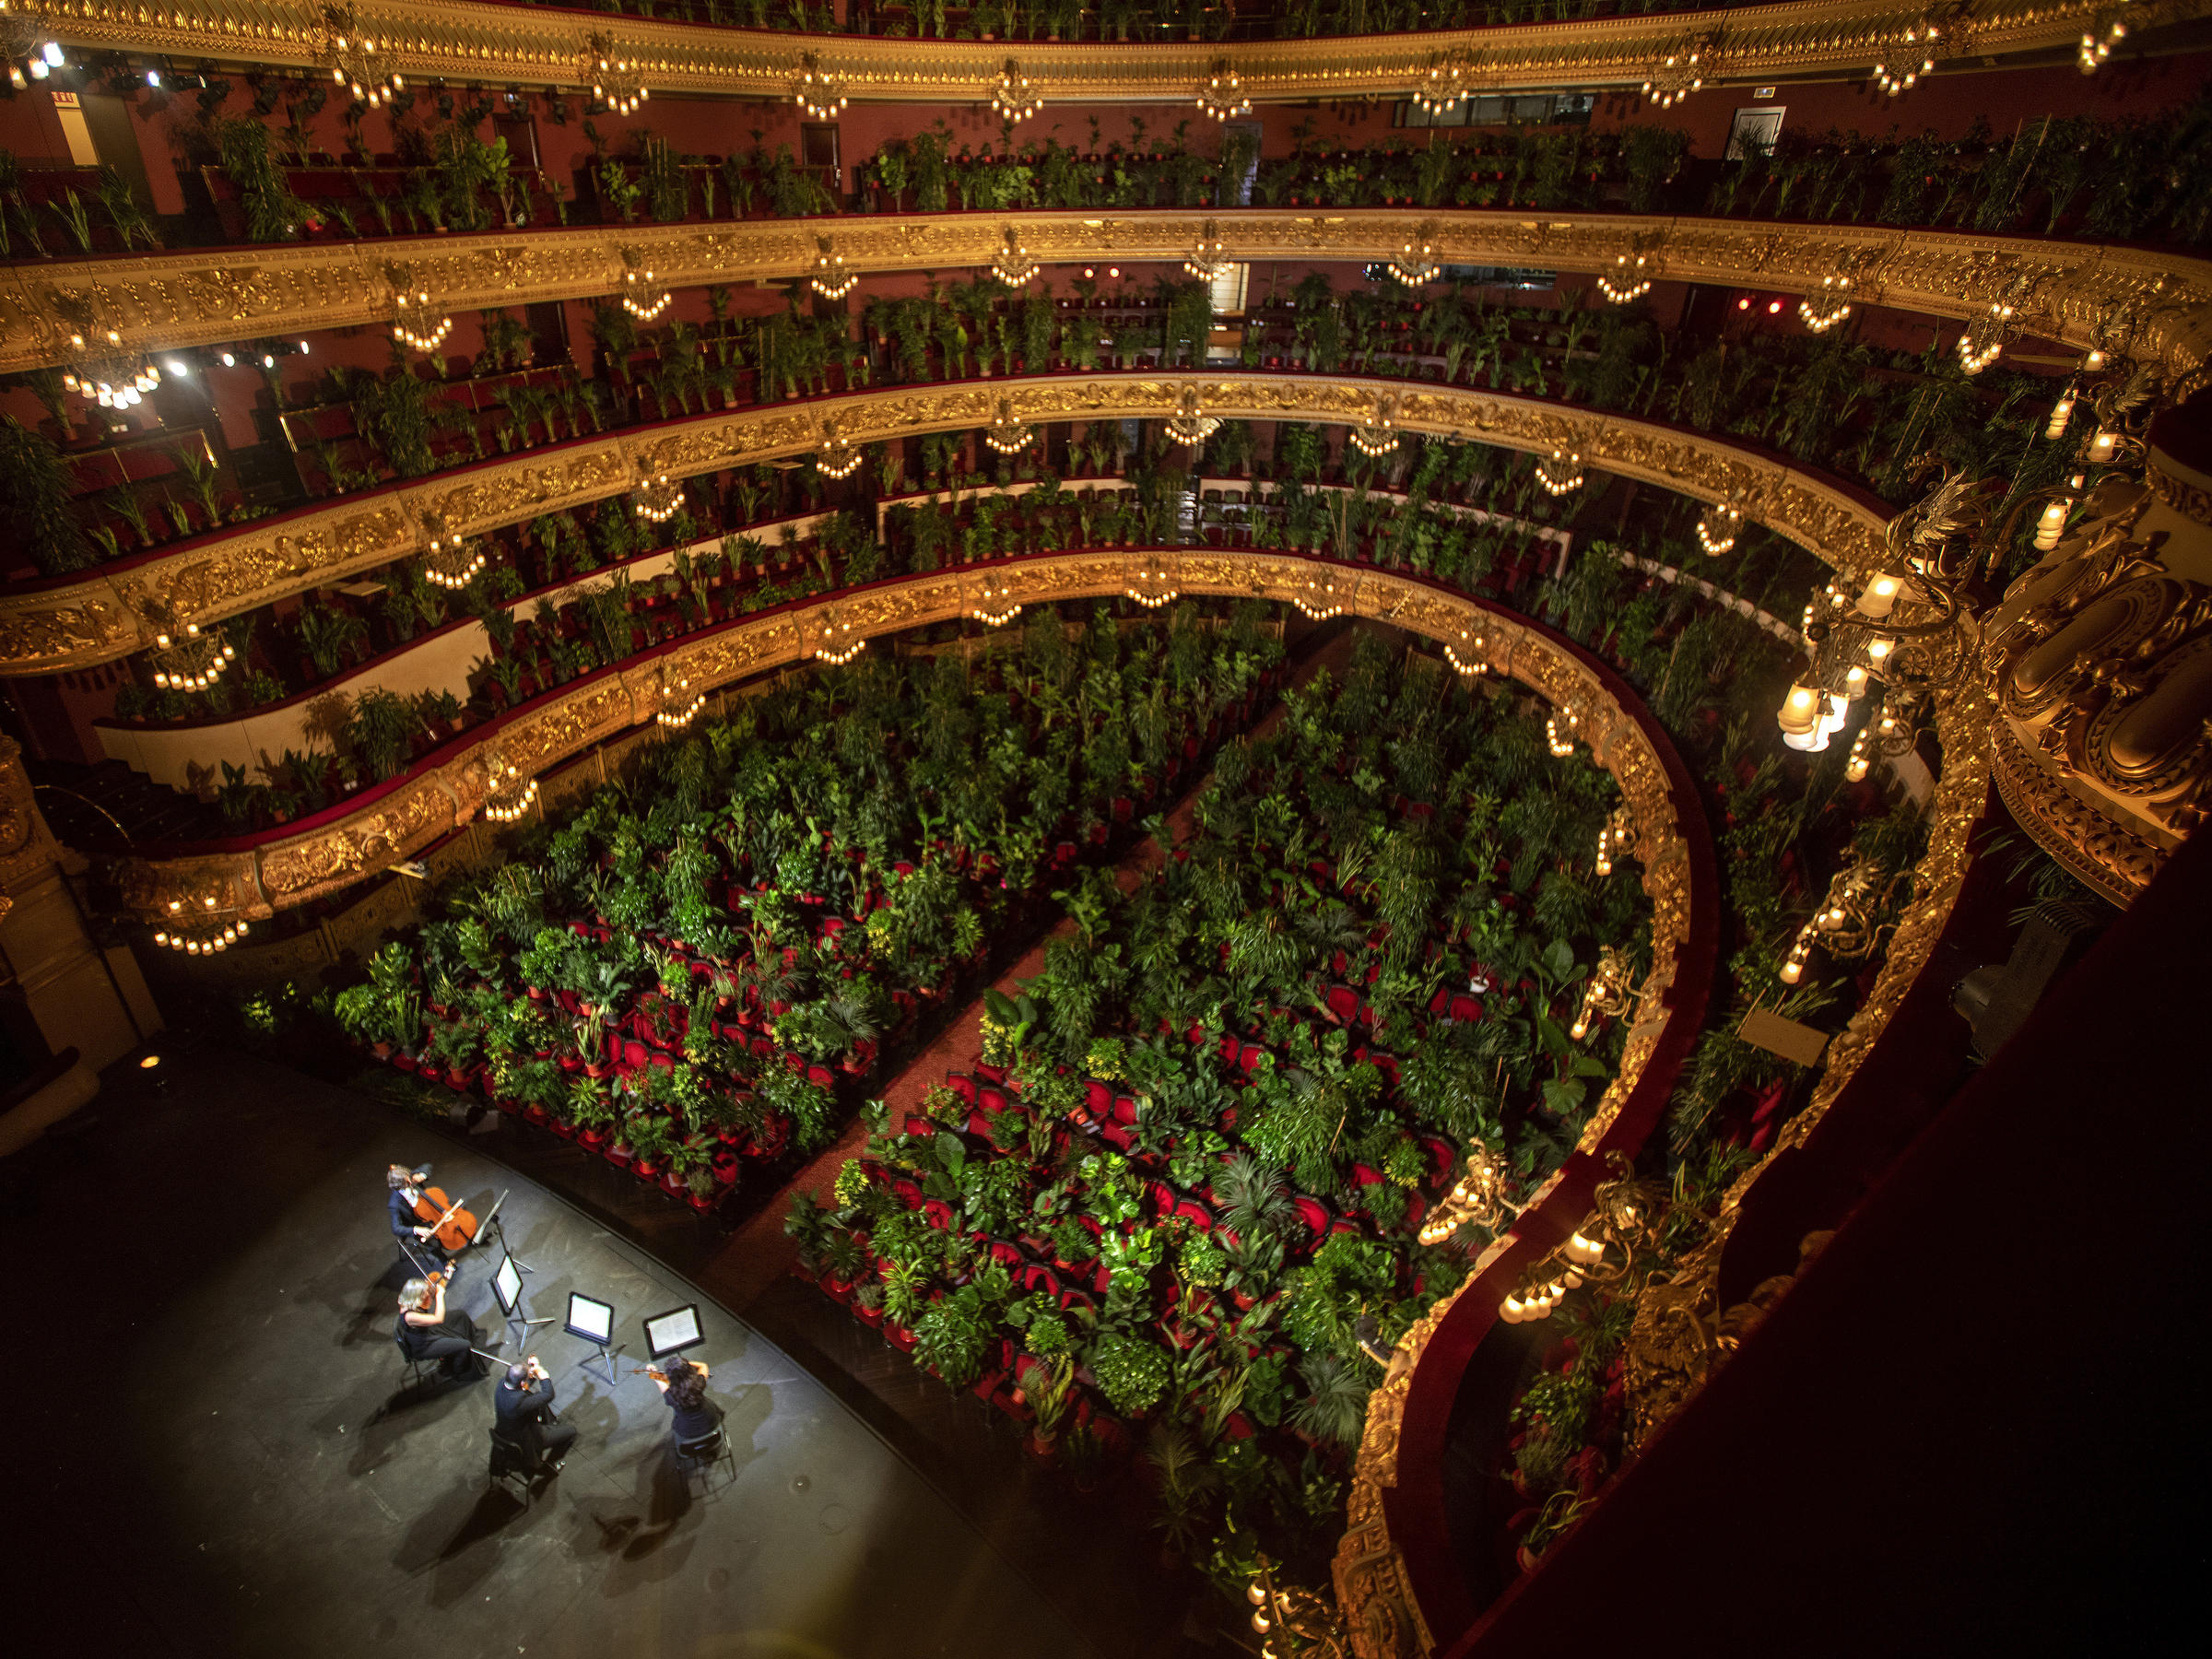 Դասական համերգ 2292 բույսերի համար Բարսելոնայի «Liceu» օպերային թատրոնում